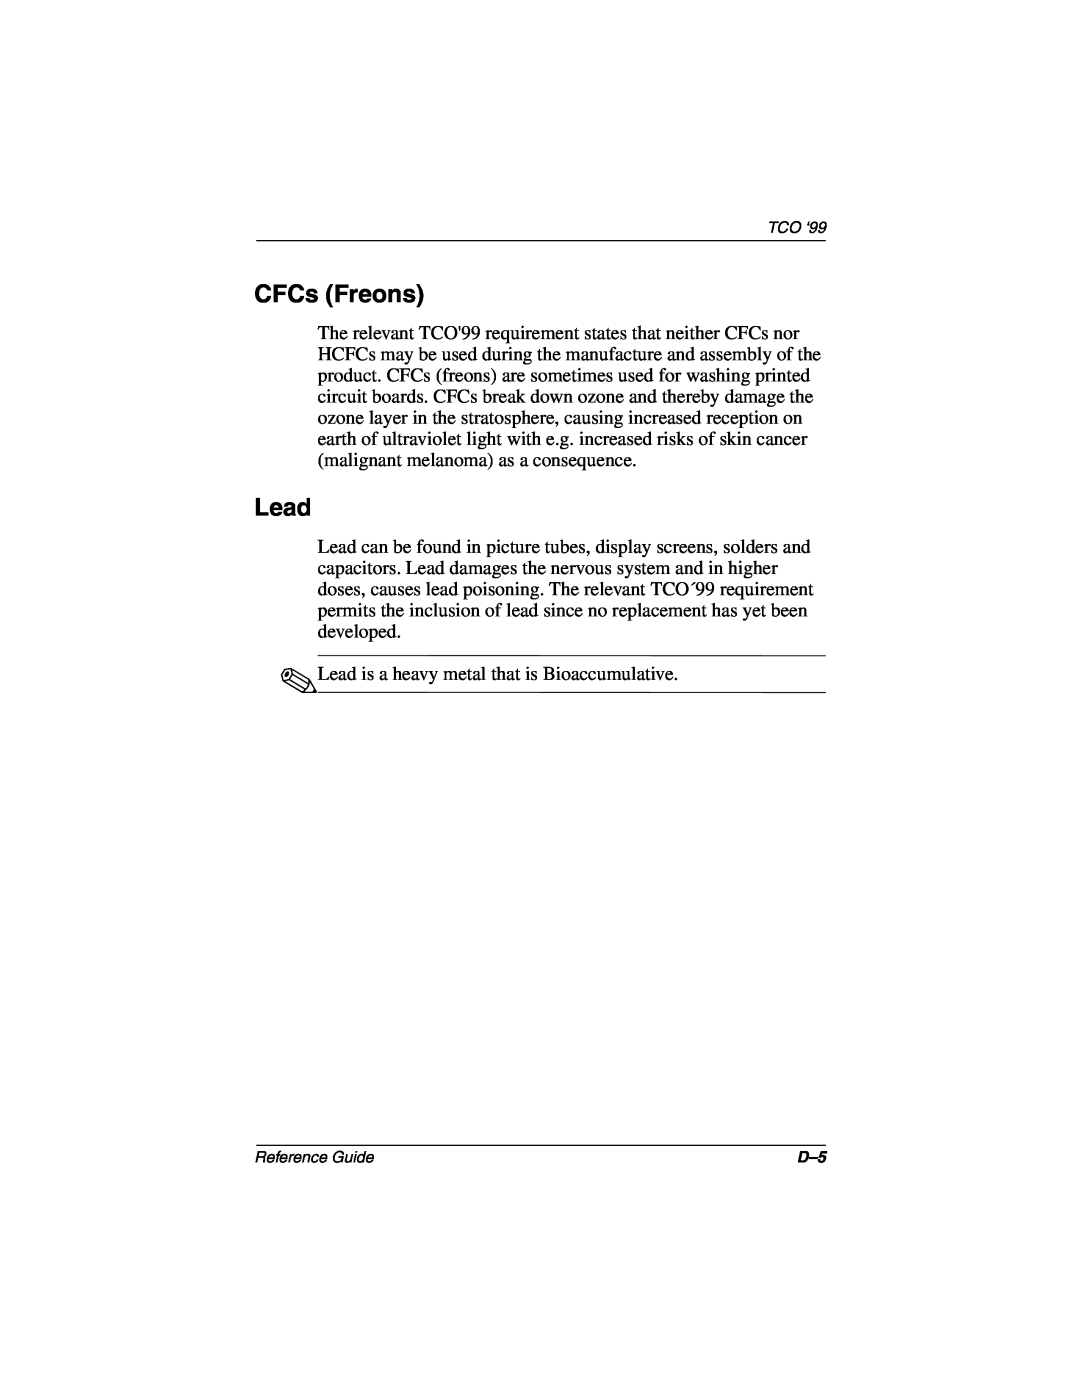 Compaq 5017 manual CFCs Freons, Lead 